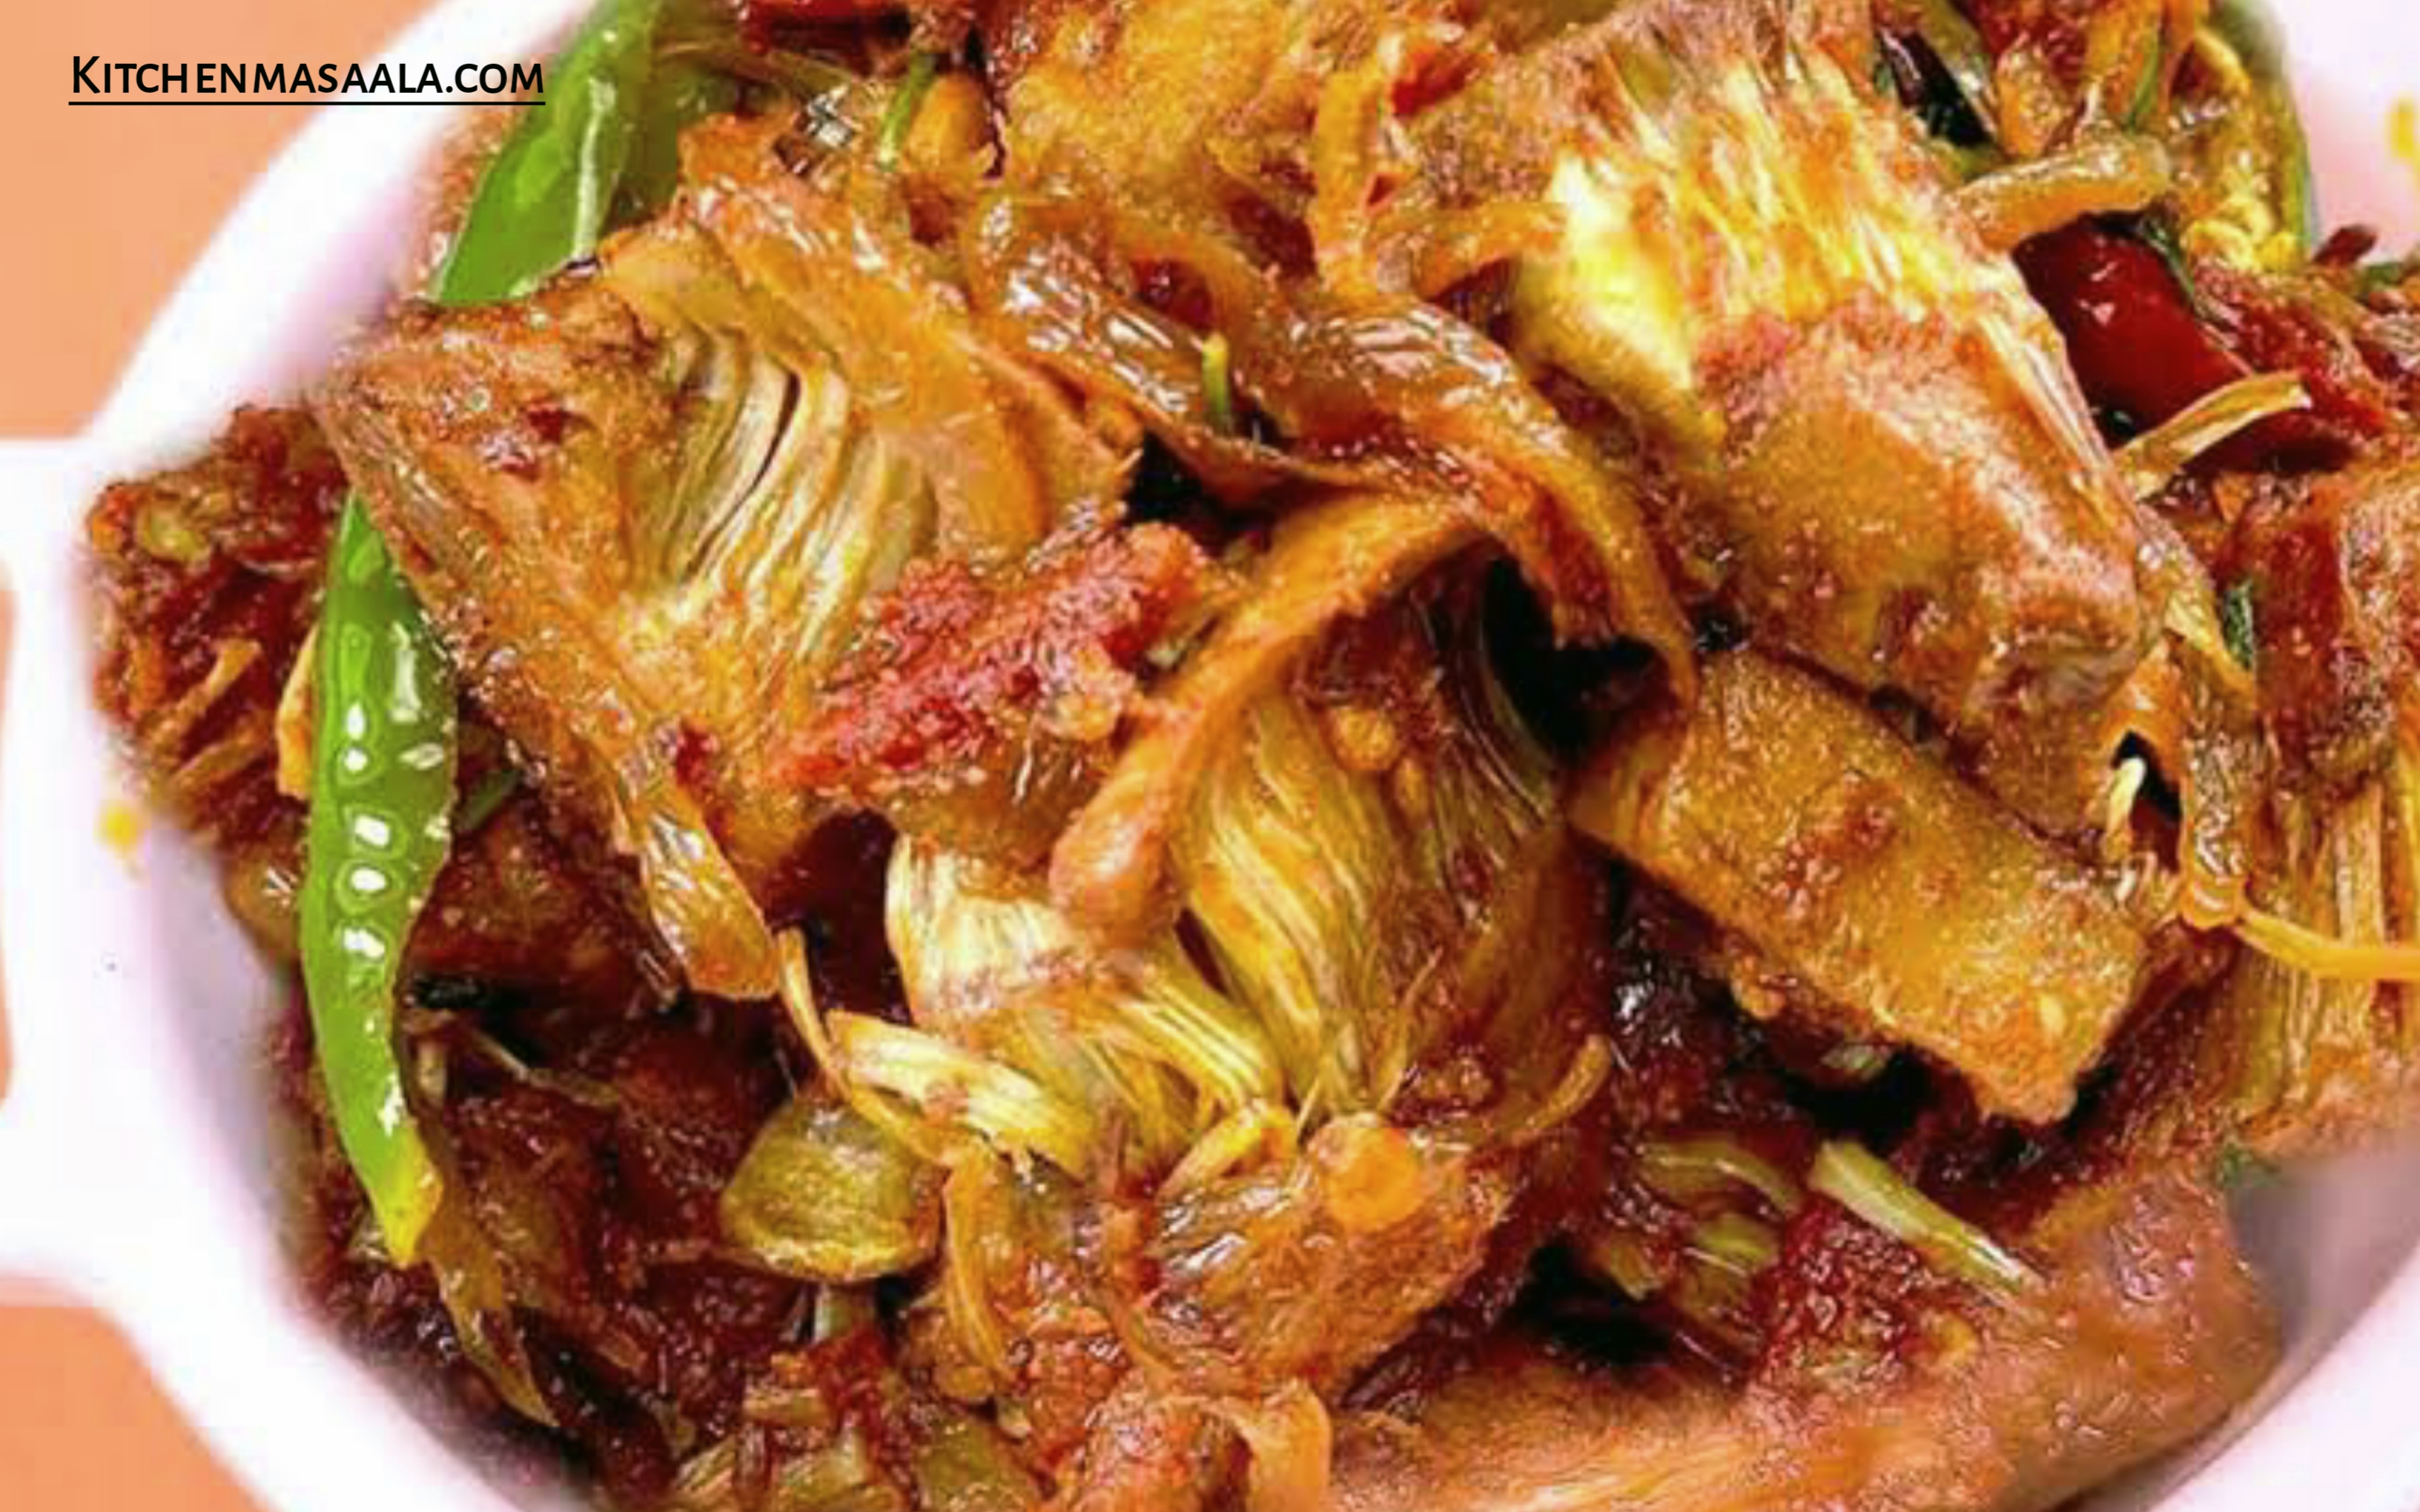 स्वादिष्ट और हेल्दी कटहल की सूखी सब्जी बनाने की विधि || Kathal ki sabji recipe in Hin, kathal ki sabji image, कटहल की सब्जी फोटो, kitchenmasaala.com